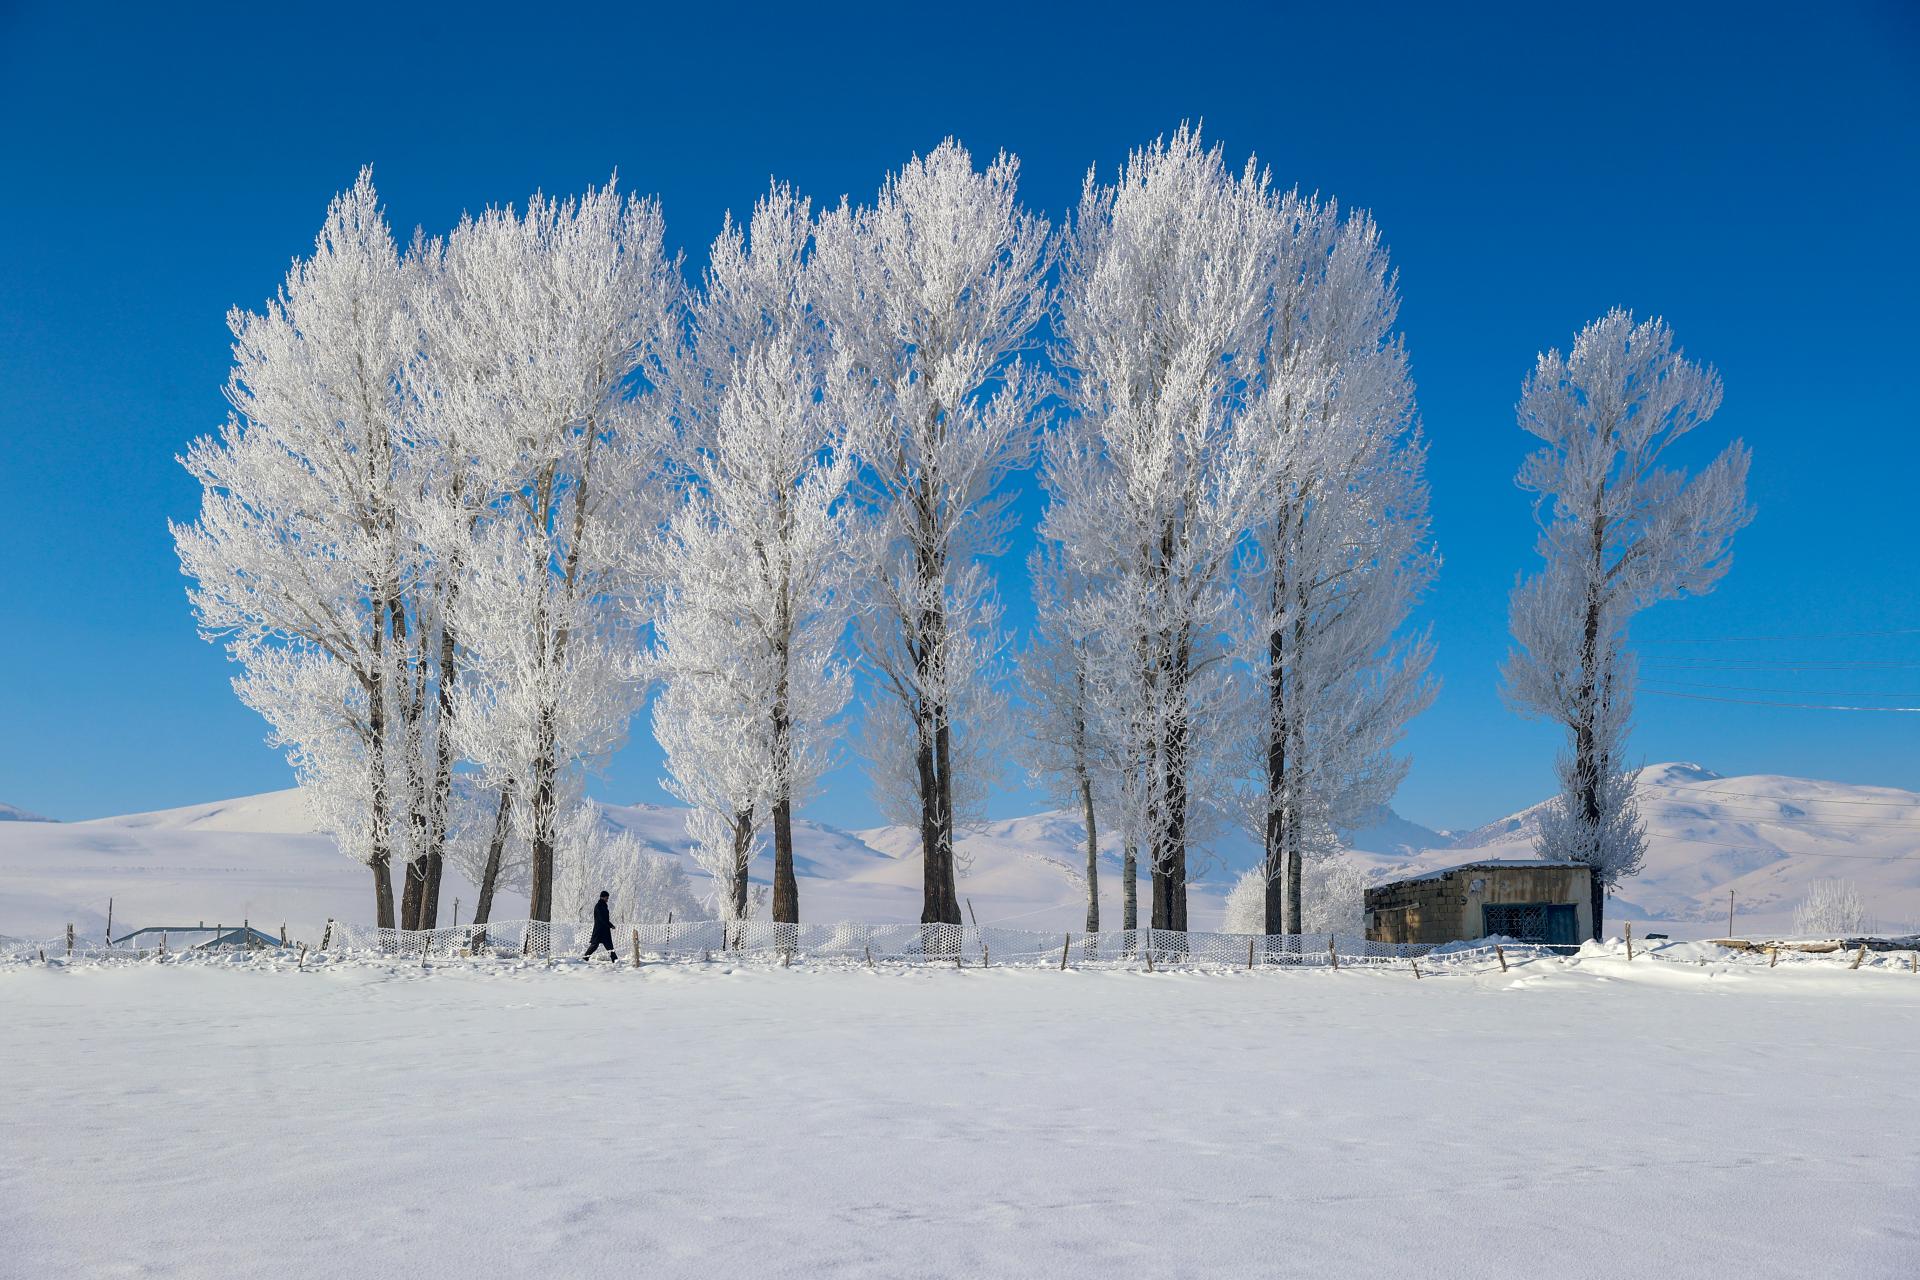 Turska: Sneg i inje stvorili prekrasan zimski krajolik u Vanu (FOTO)